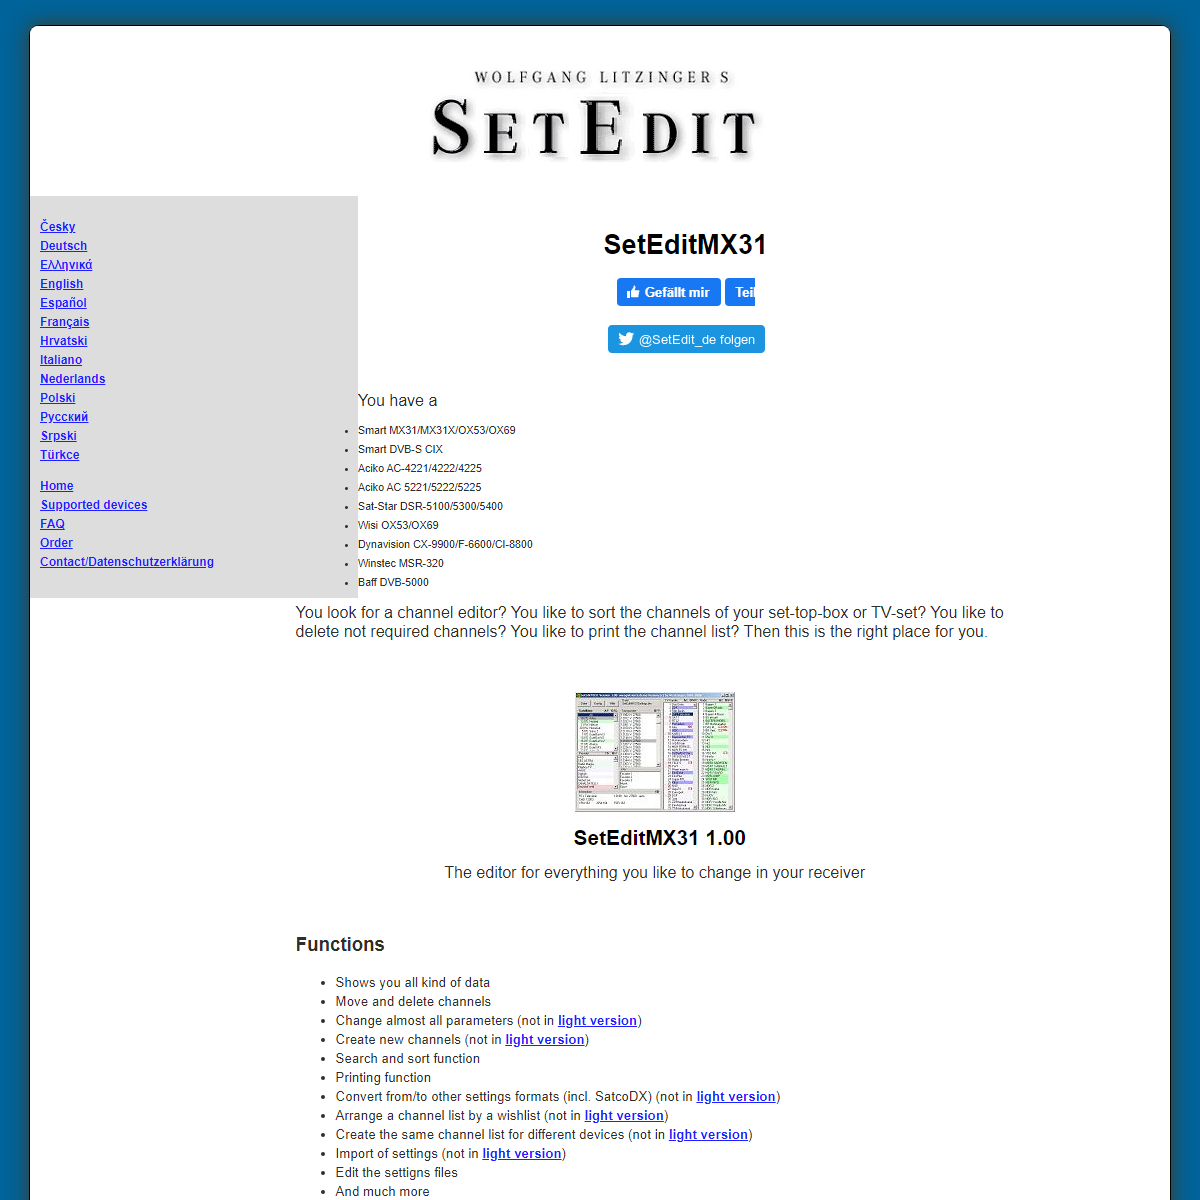 A complete backup of https://www.setedit.de/SetEdit.php?spr=2&Editor=69